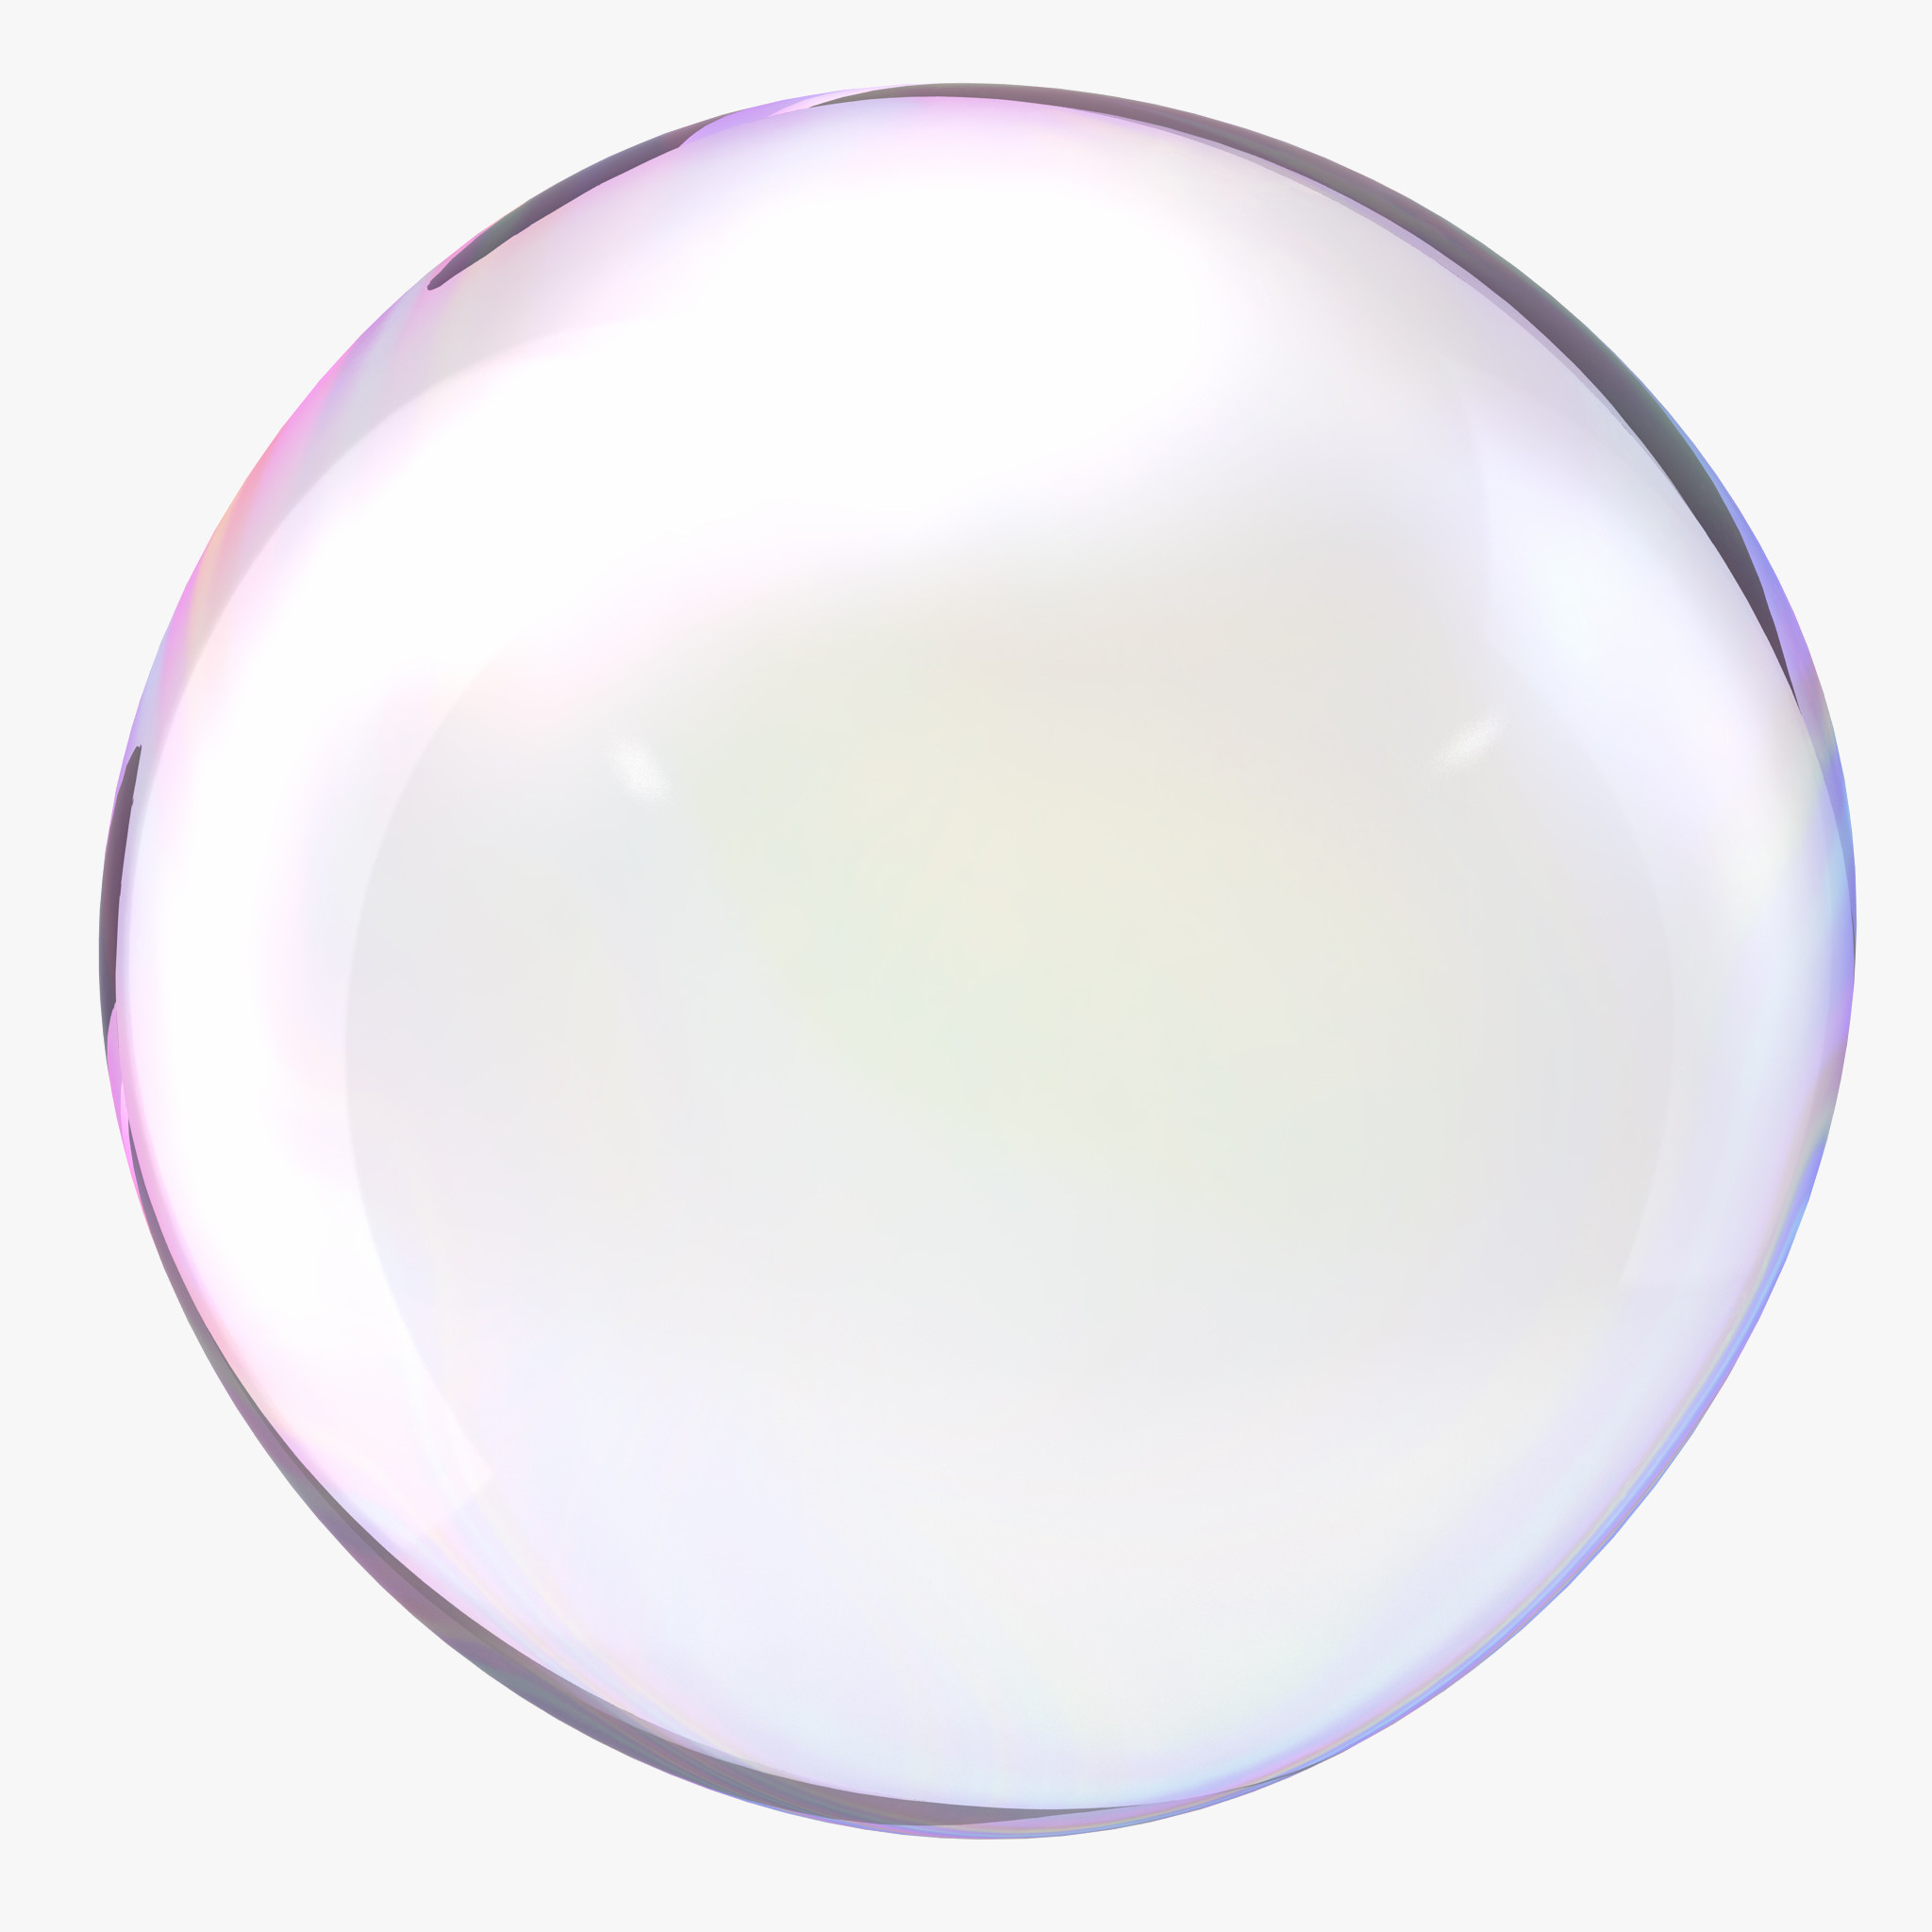 Bubbles Png File - Bubble, Transparent background PNG HD thumbnail